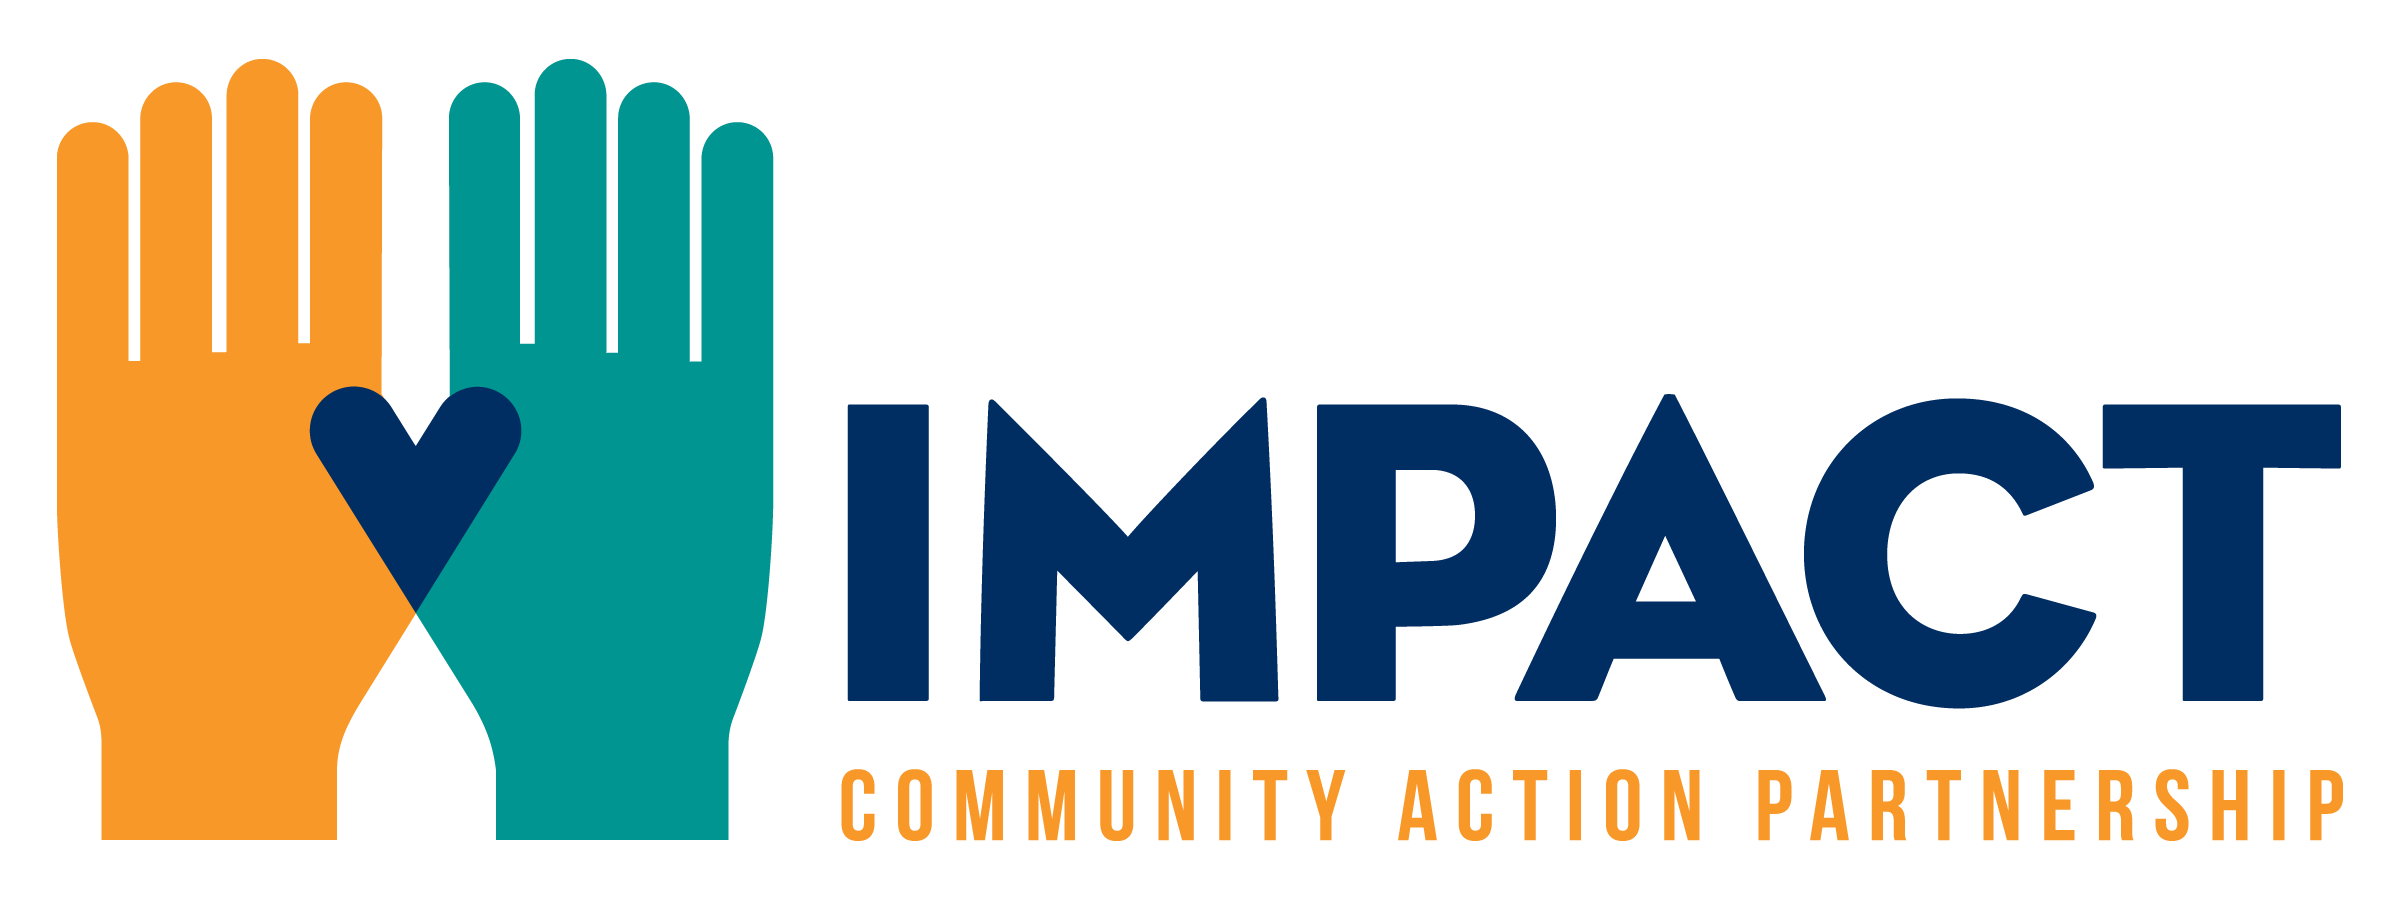 IMPACT Community Action Partnership  logo